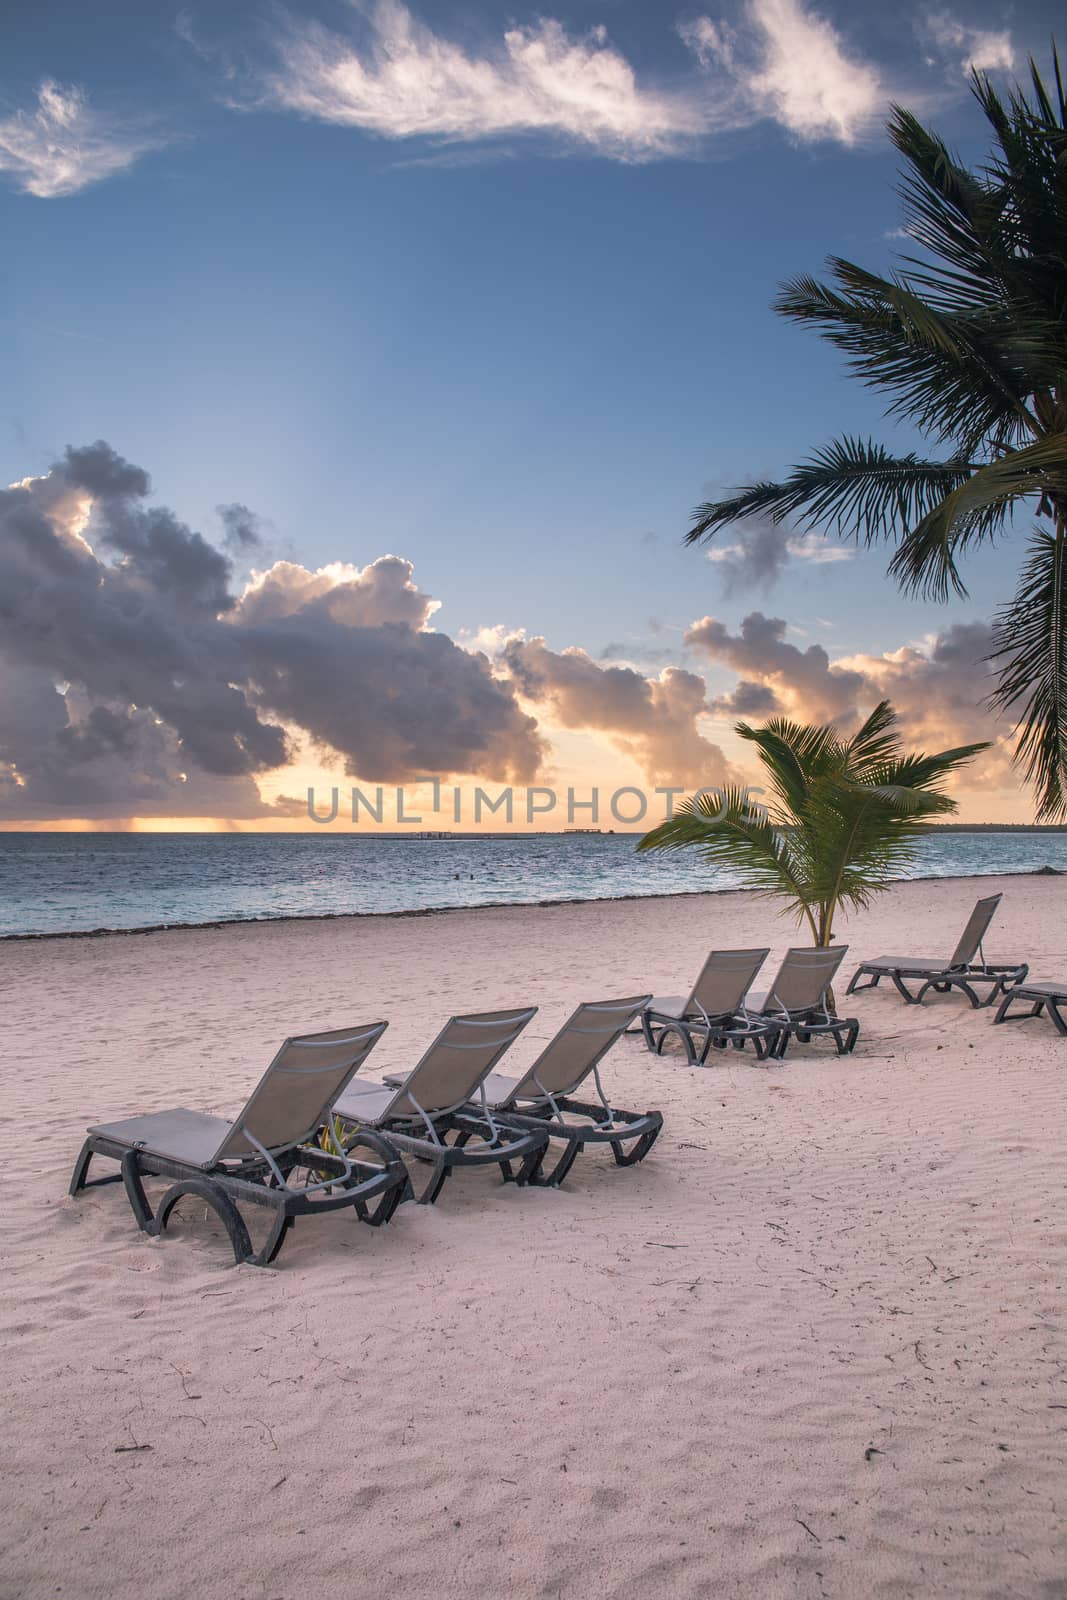 Sunrise on the beach by alex_bendea